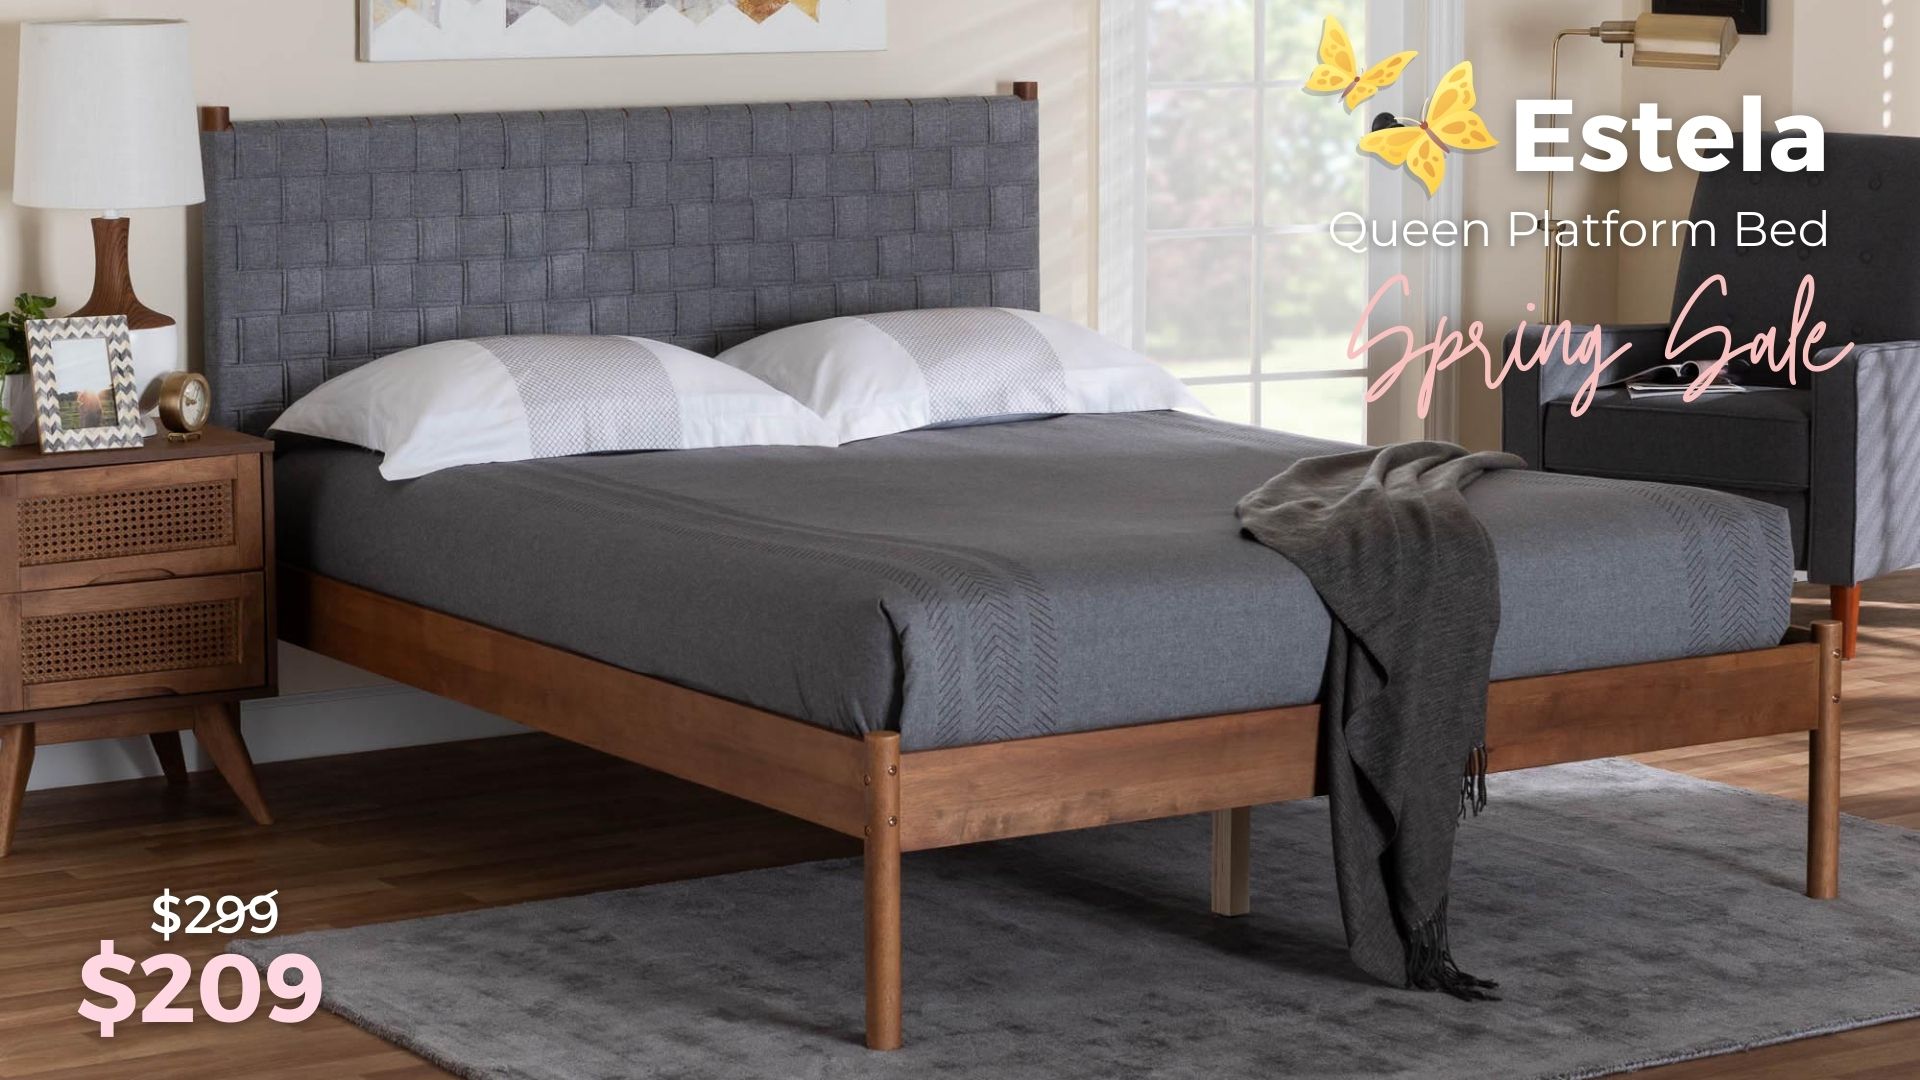 Estela Queen Size Bed $209